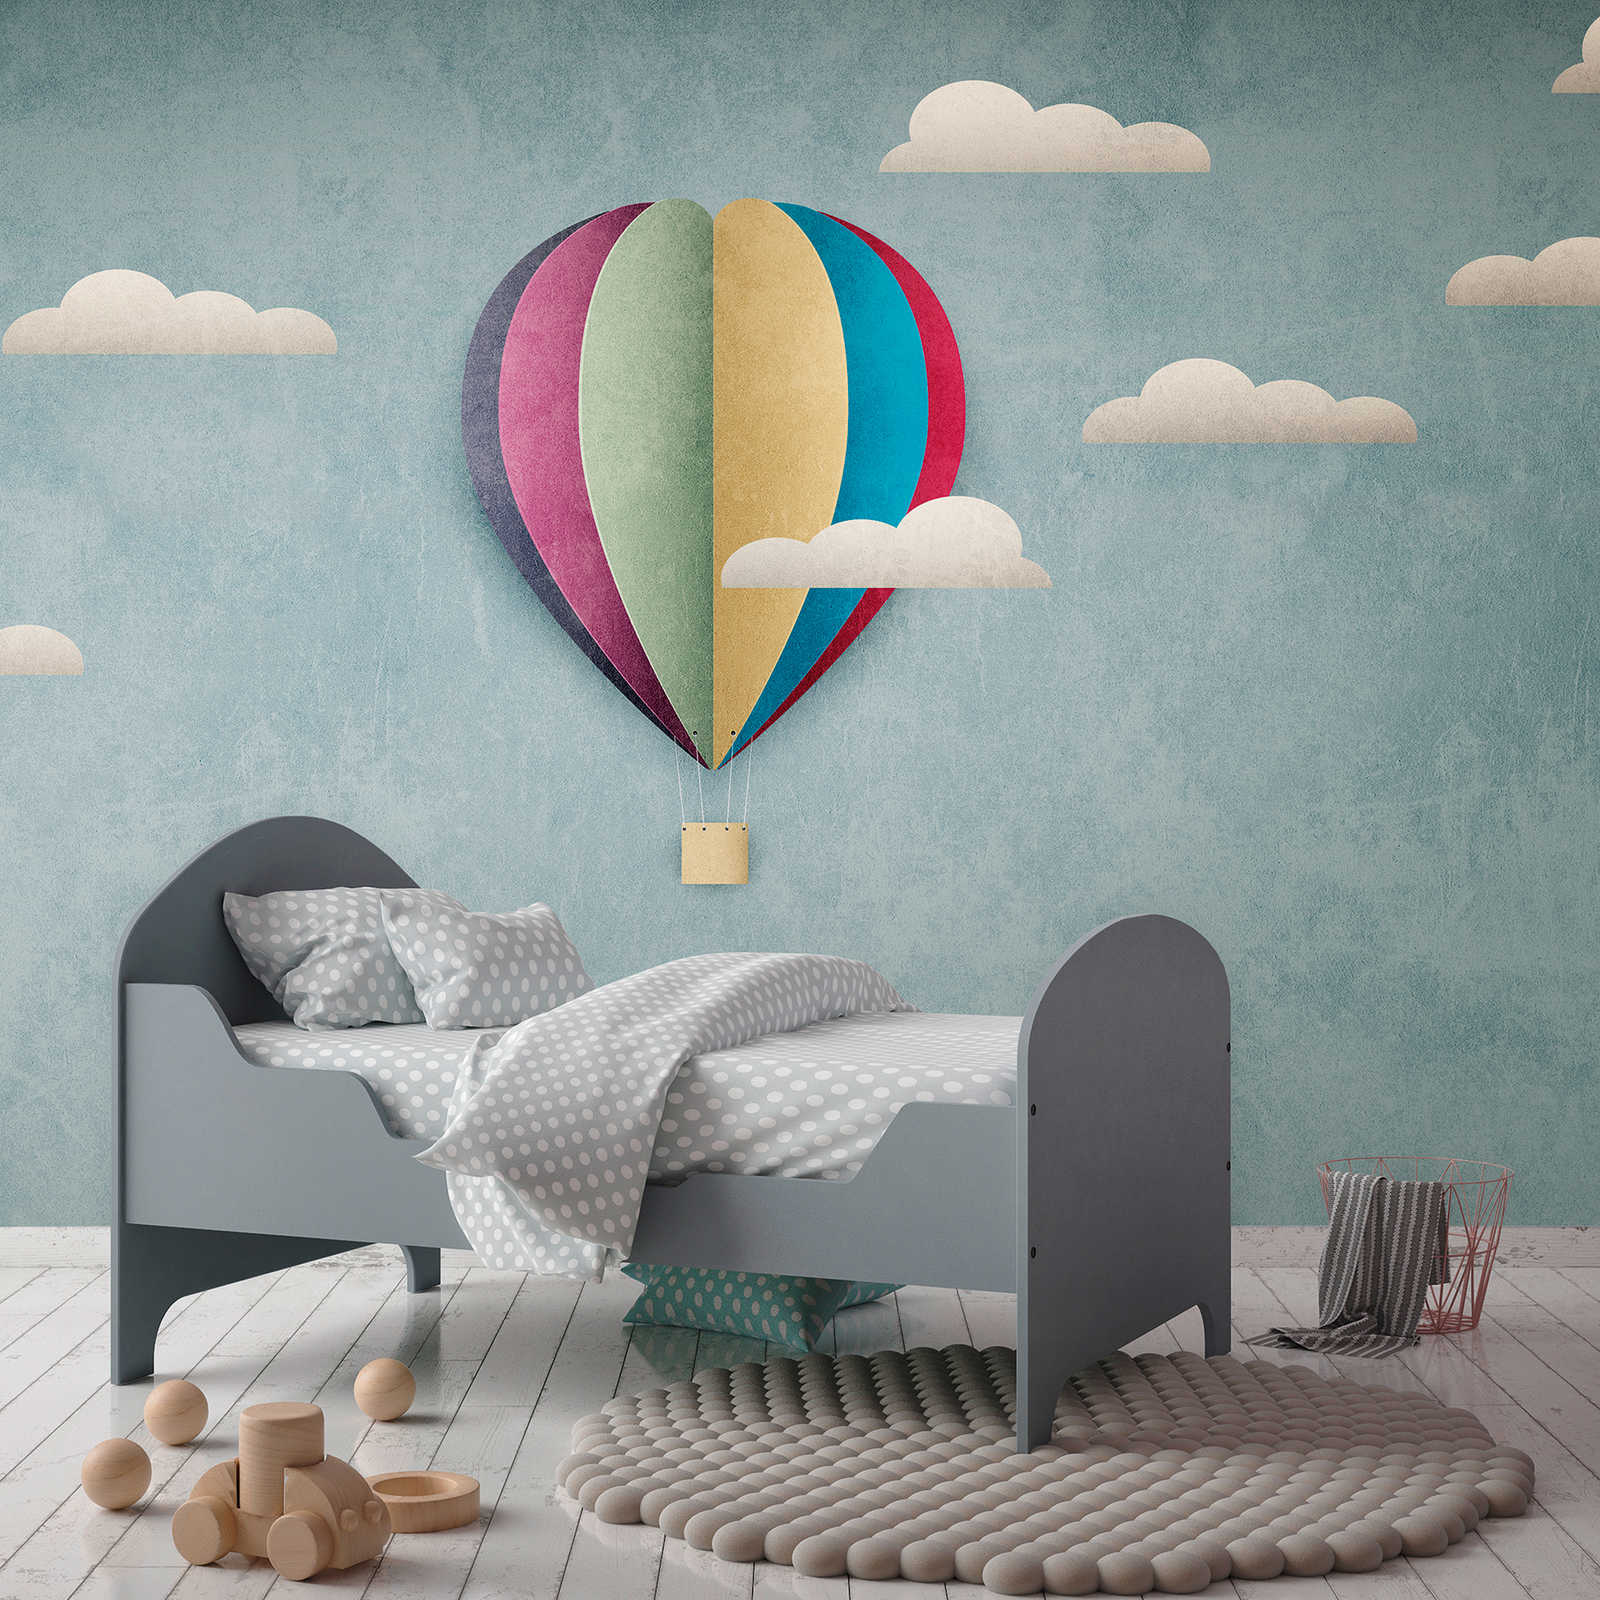 Wallpaper novelty | motif wallpaper hot air balloon & cloudy sky for kids
